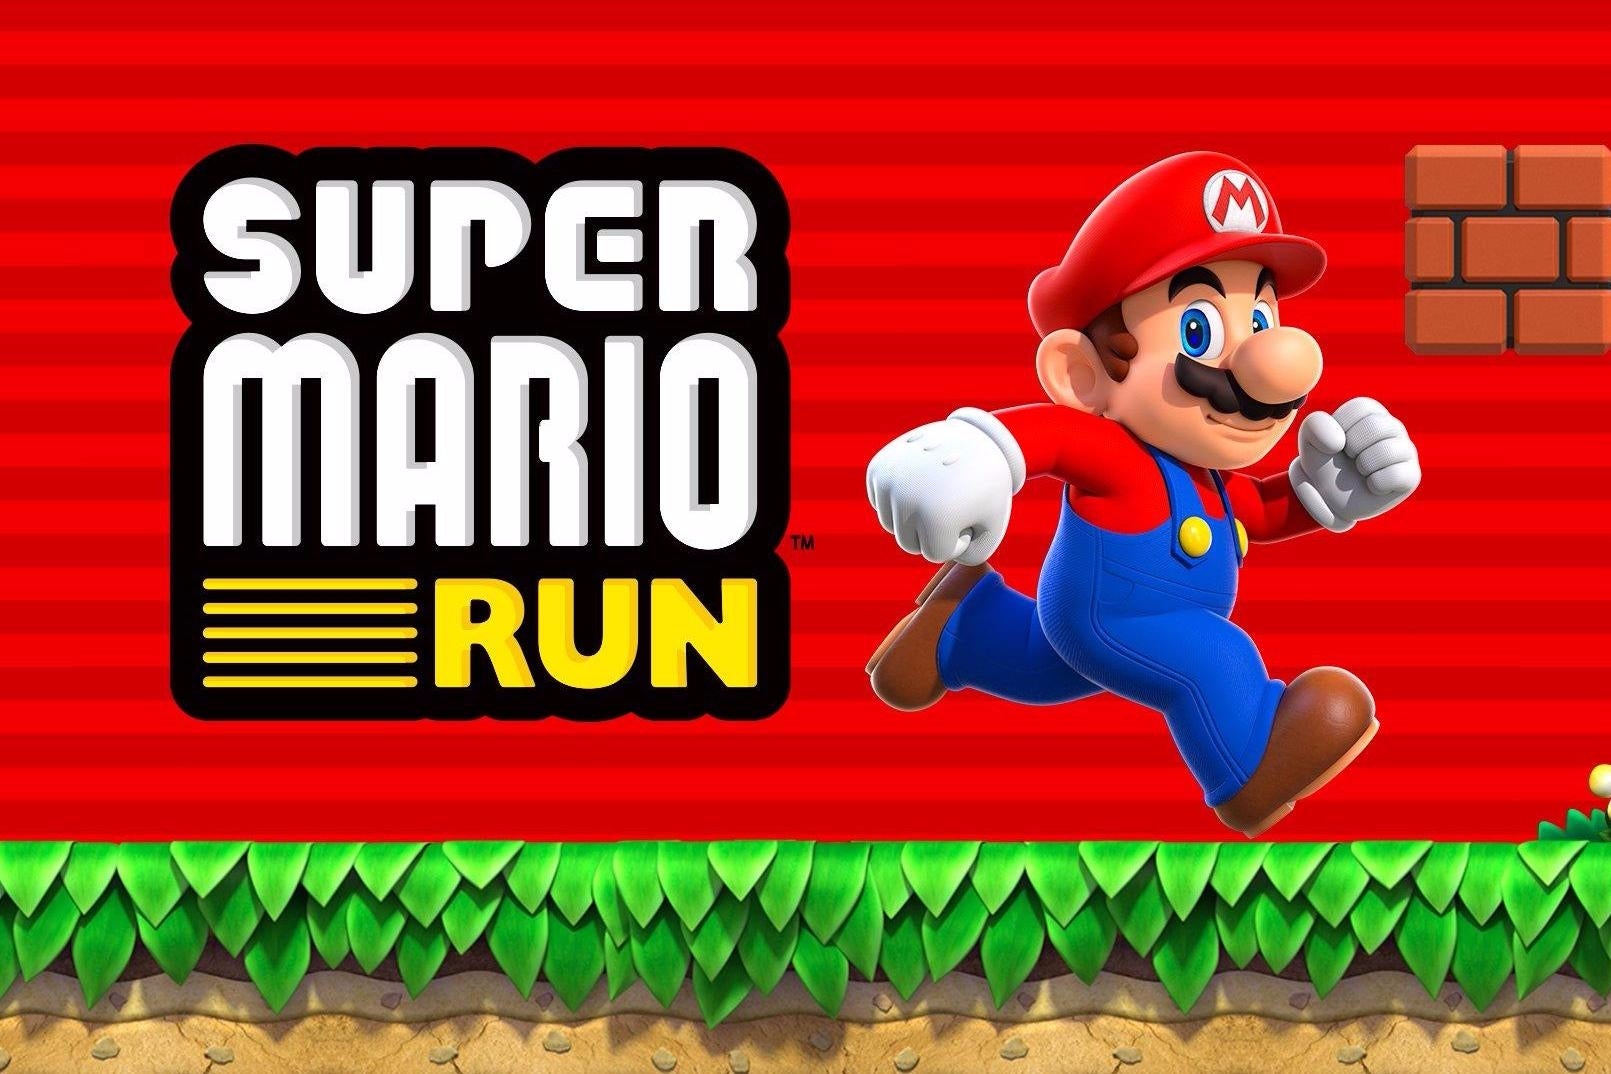 Afbeeldingen van Super Mario Run tips en tricks voor beginners en experts